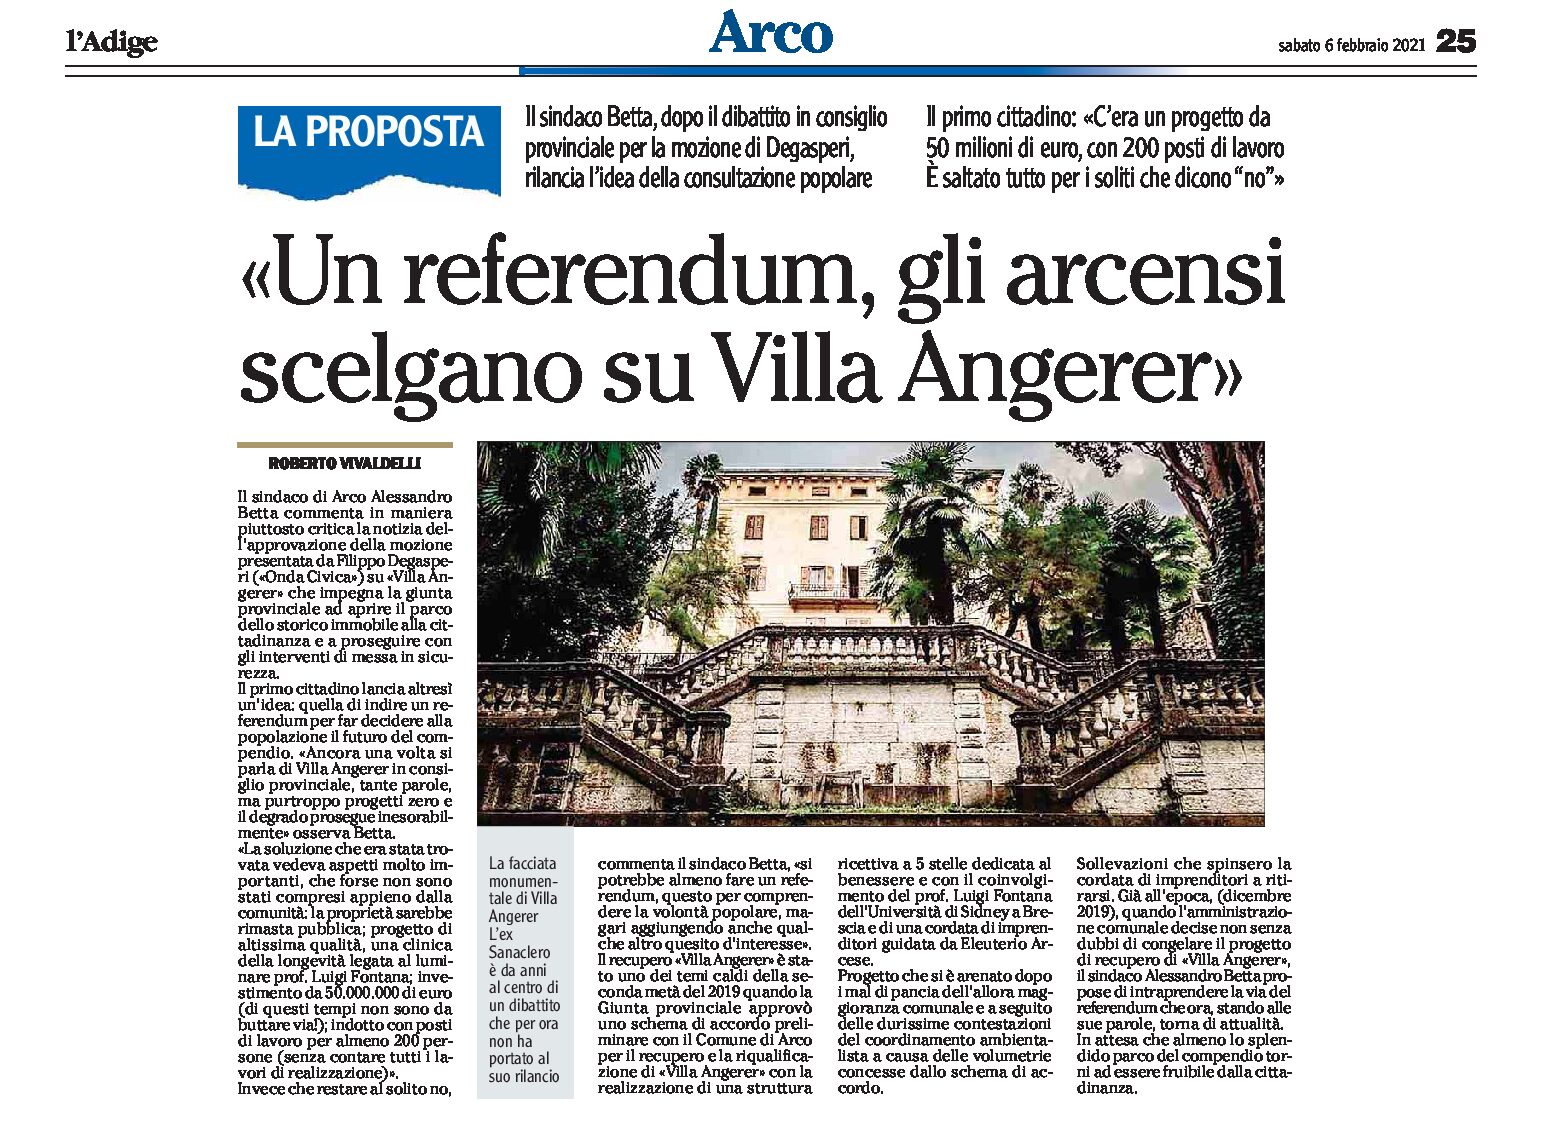 Arco: Betta “un referendum, gli arcensi scelgano su Villa Angerer”